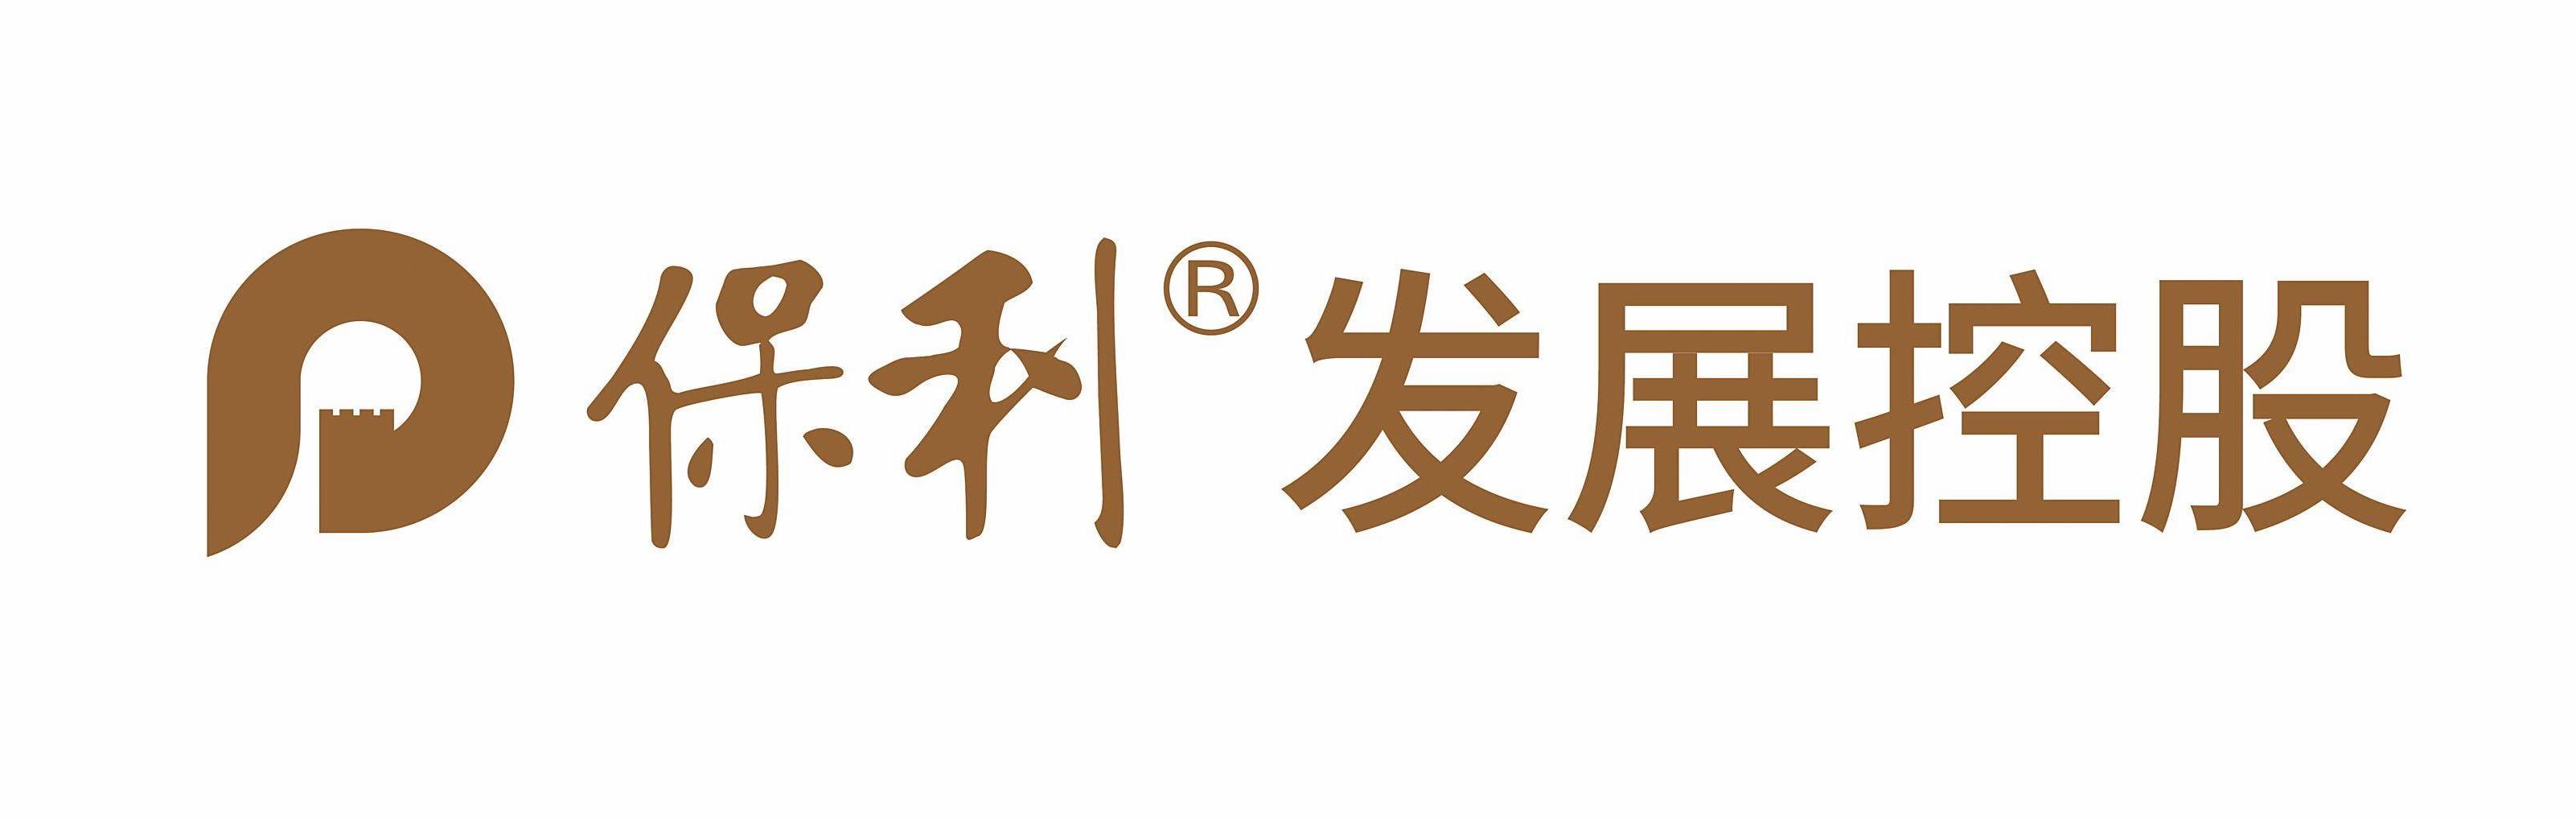 保利发展控股集团股份有限公司-logo